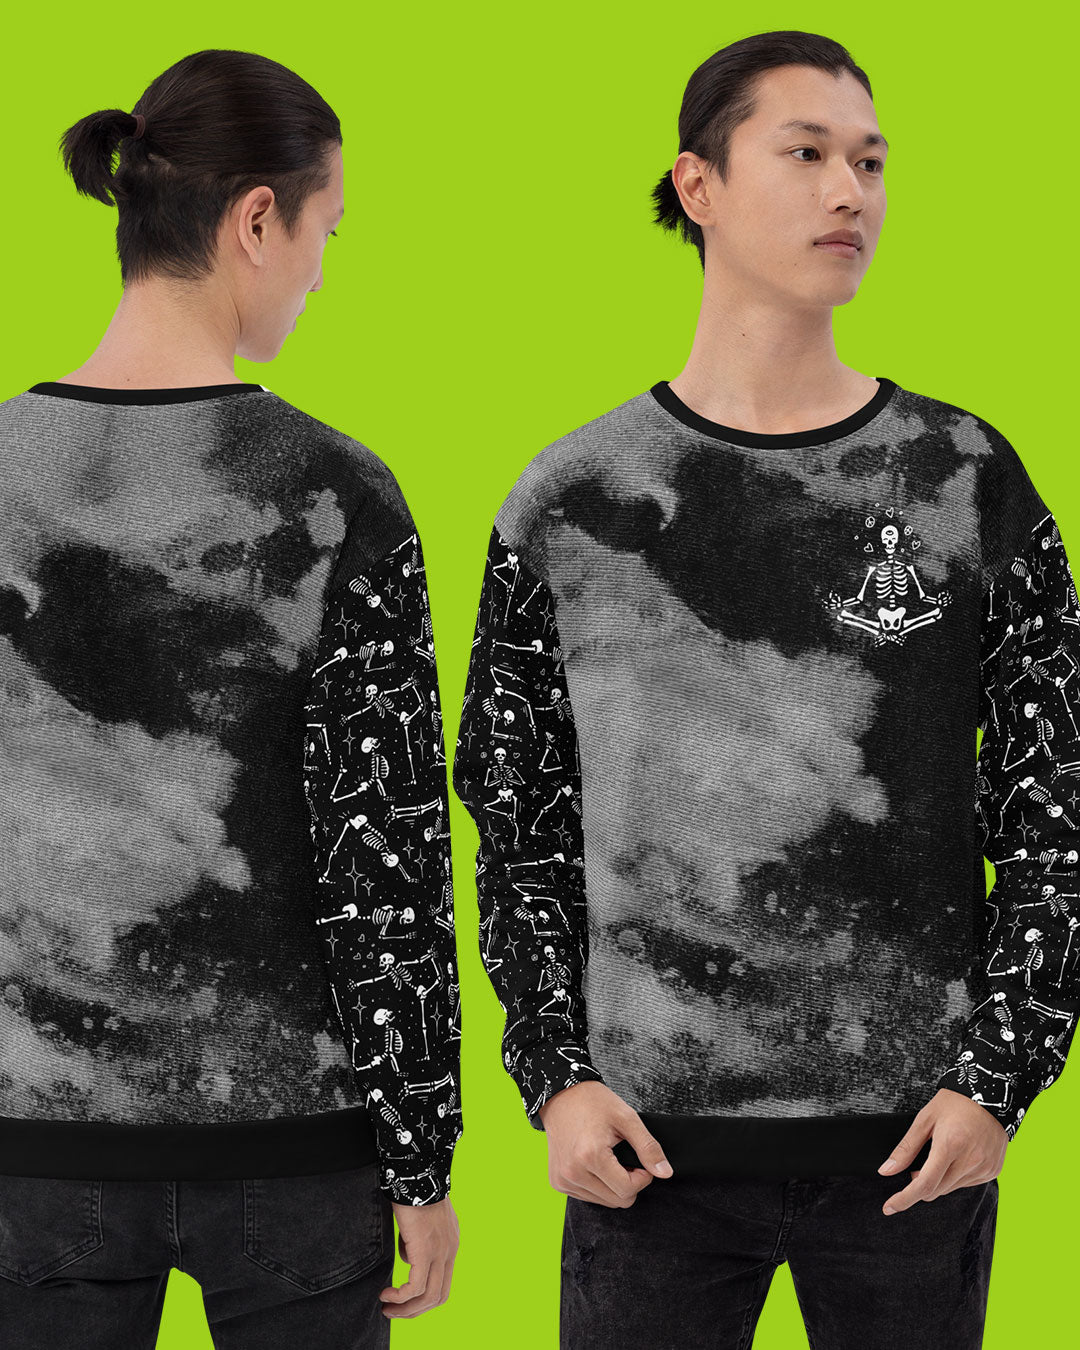 Zen Yoga Skeletons Sweatshirt